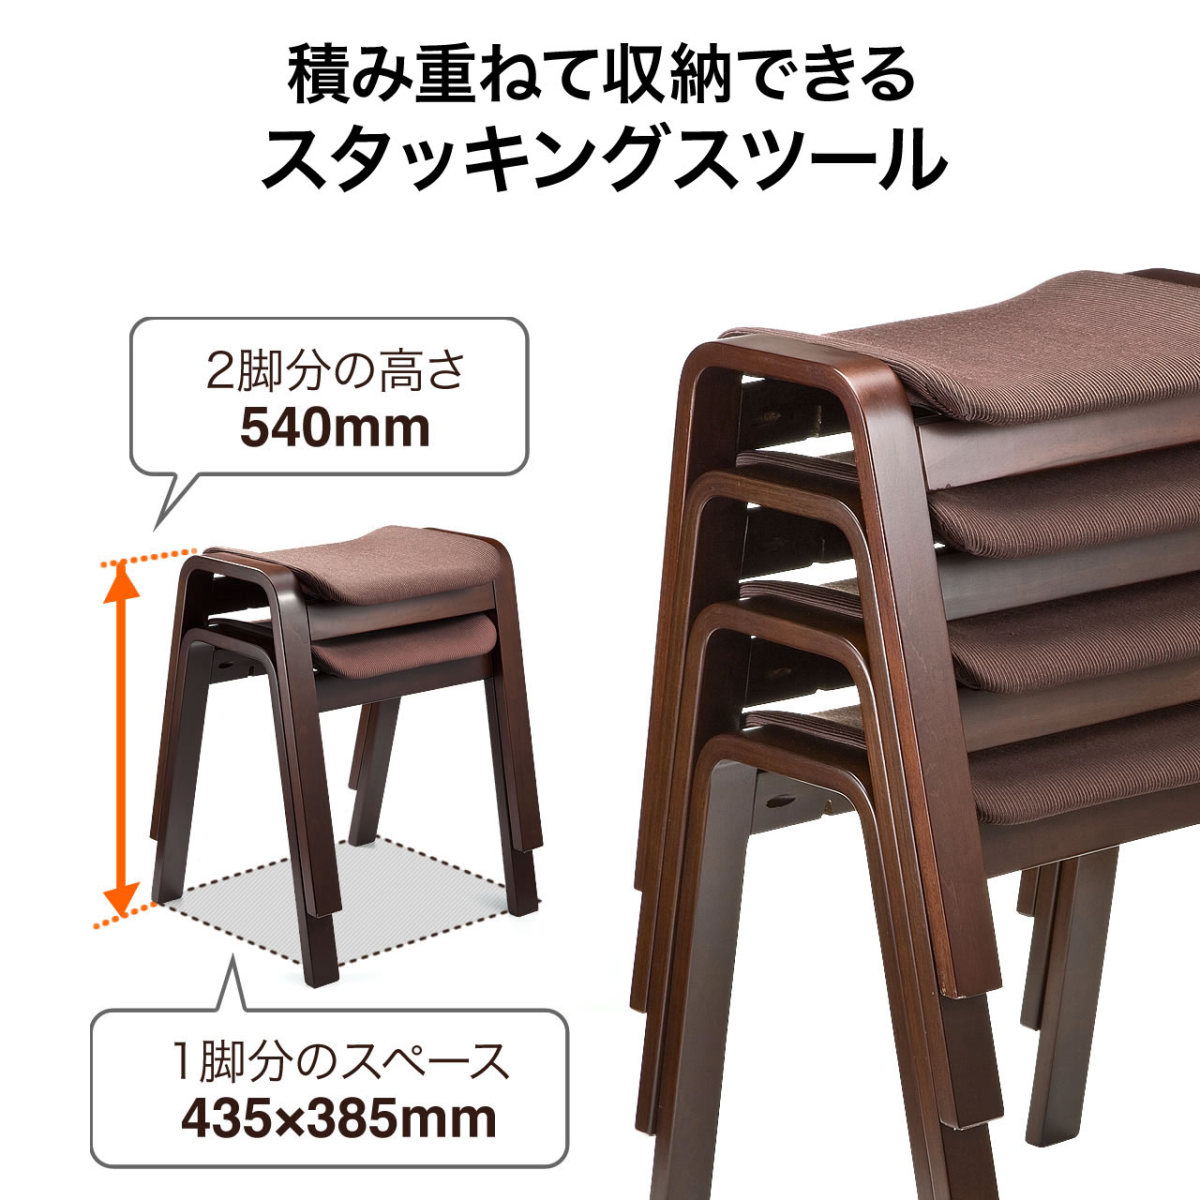 スツール 木製 おしゃれ 腰掛け 椅子 チェア スタッキング 積み重ね 